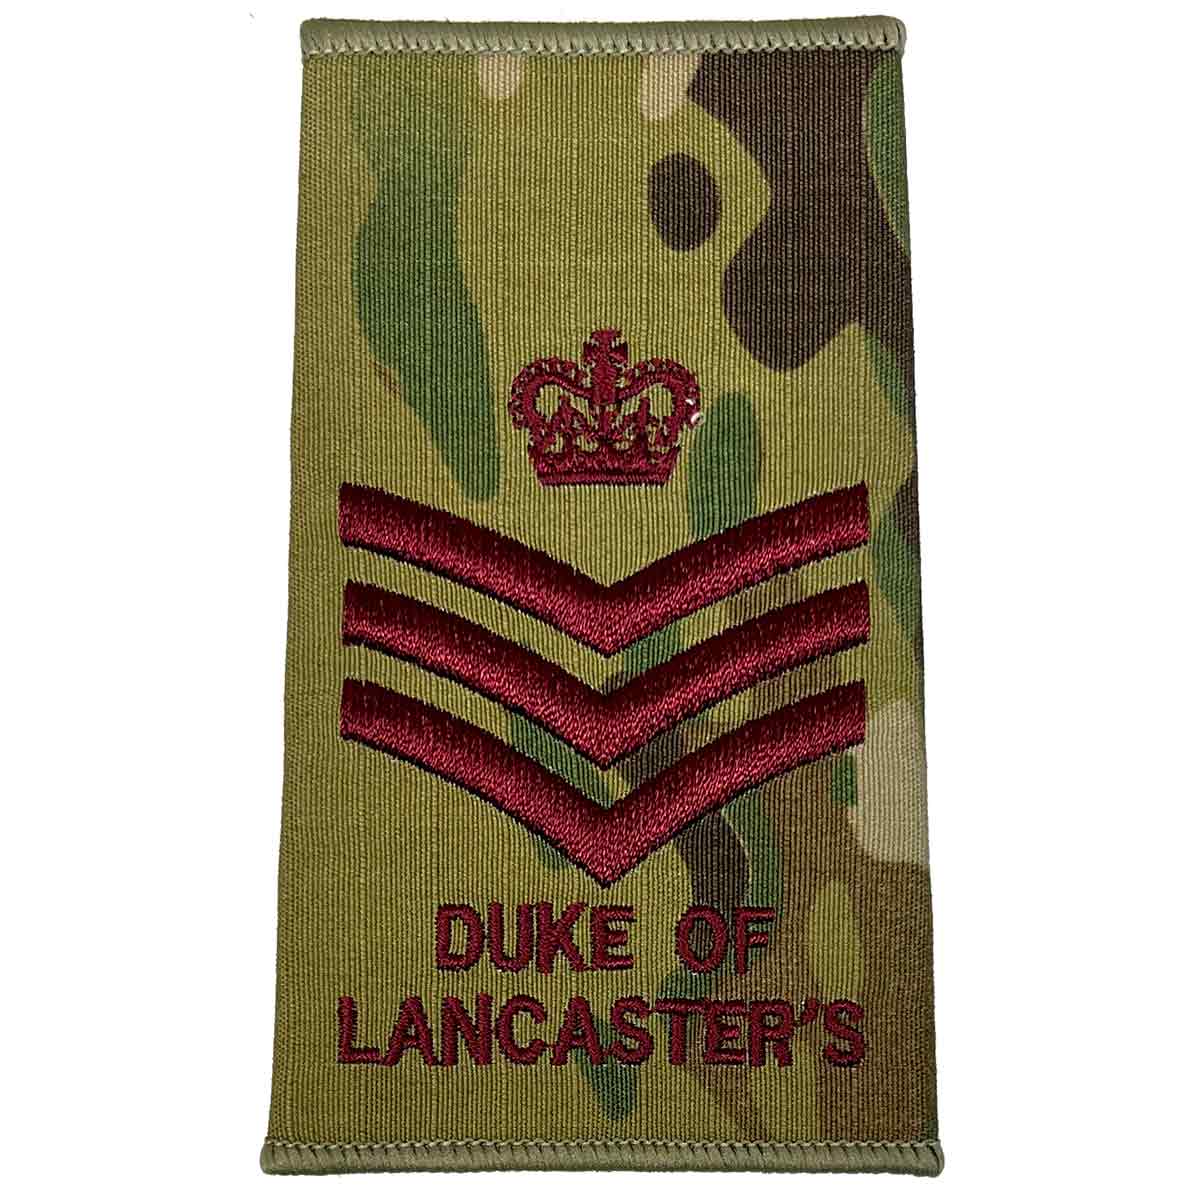 Duke of Lancasters Multicam Rank Slides (Pair) - John Bull Clothing